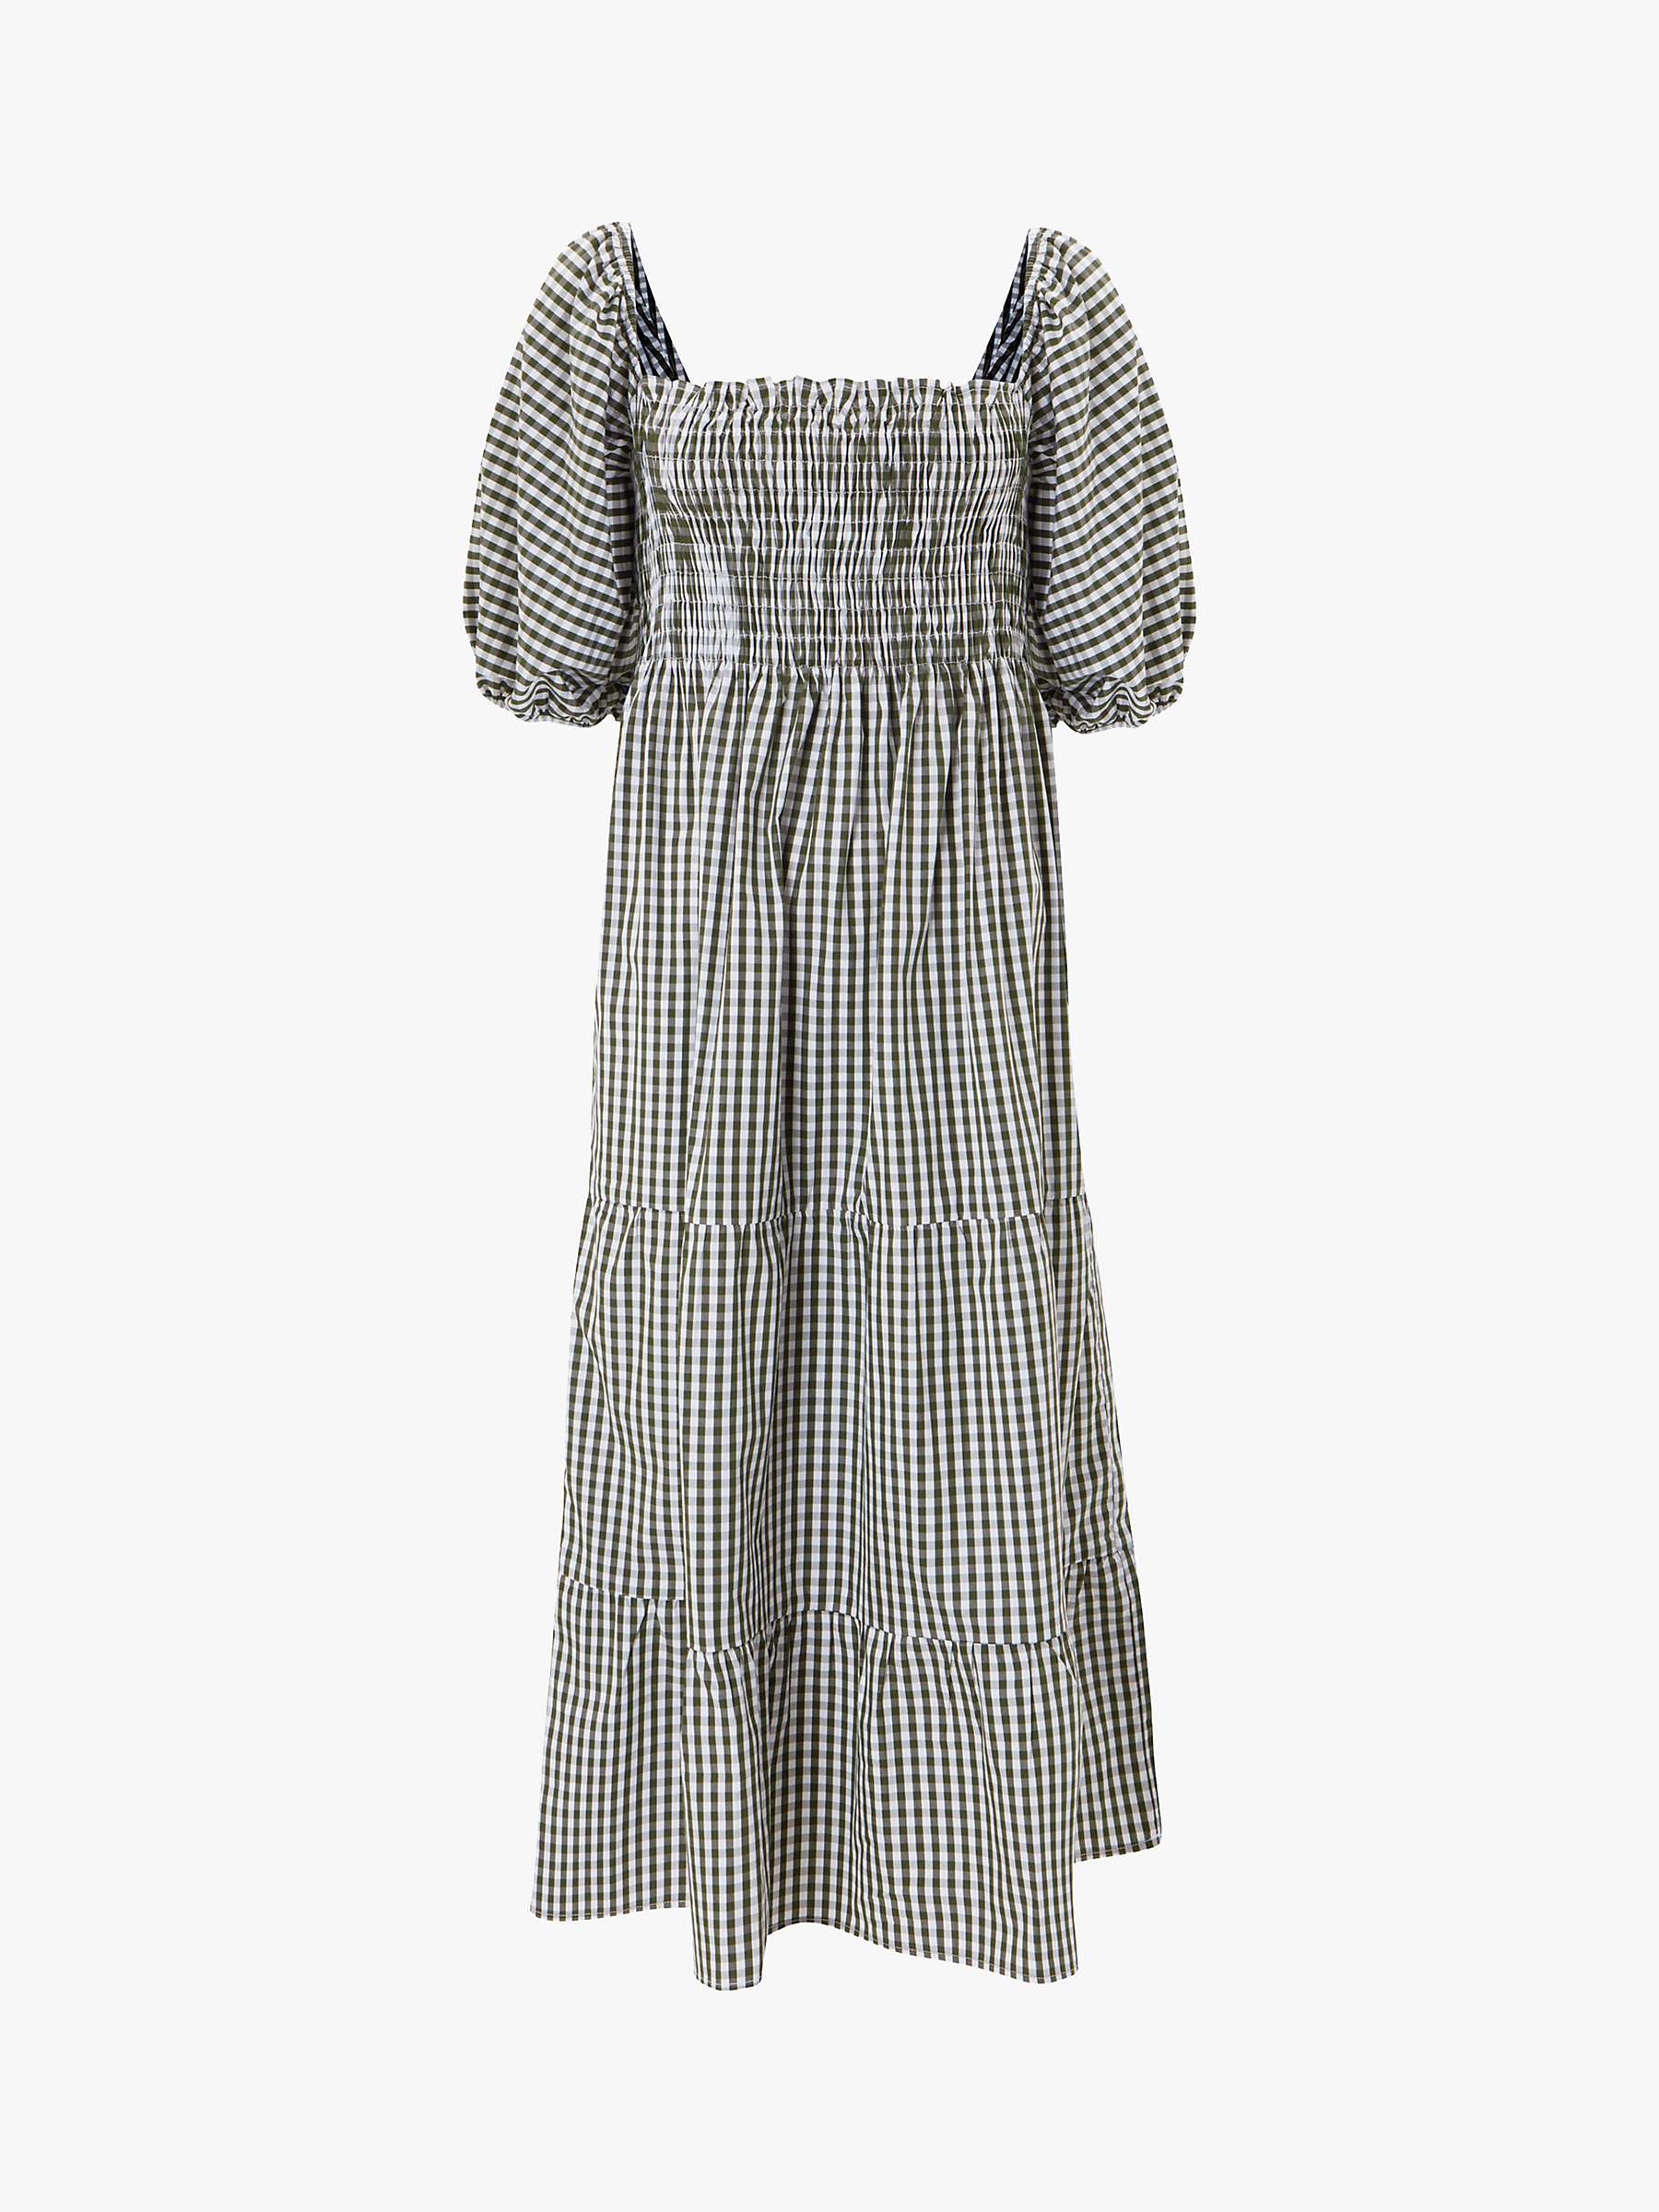 Buy Baukjen Tania Gingham Tiered Midi Dress, Khaki/White Online at johnlewis.com